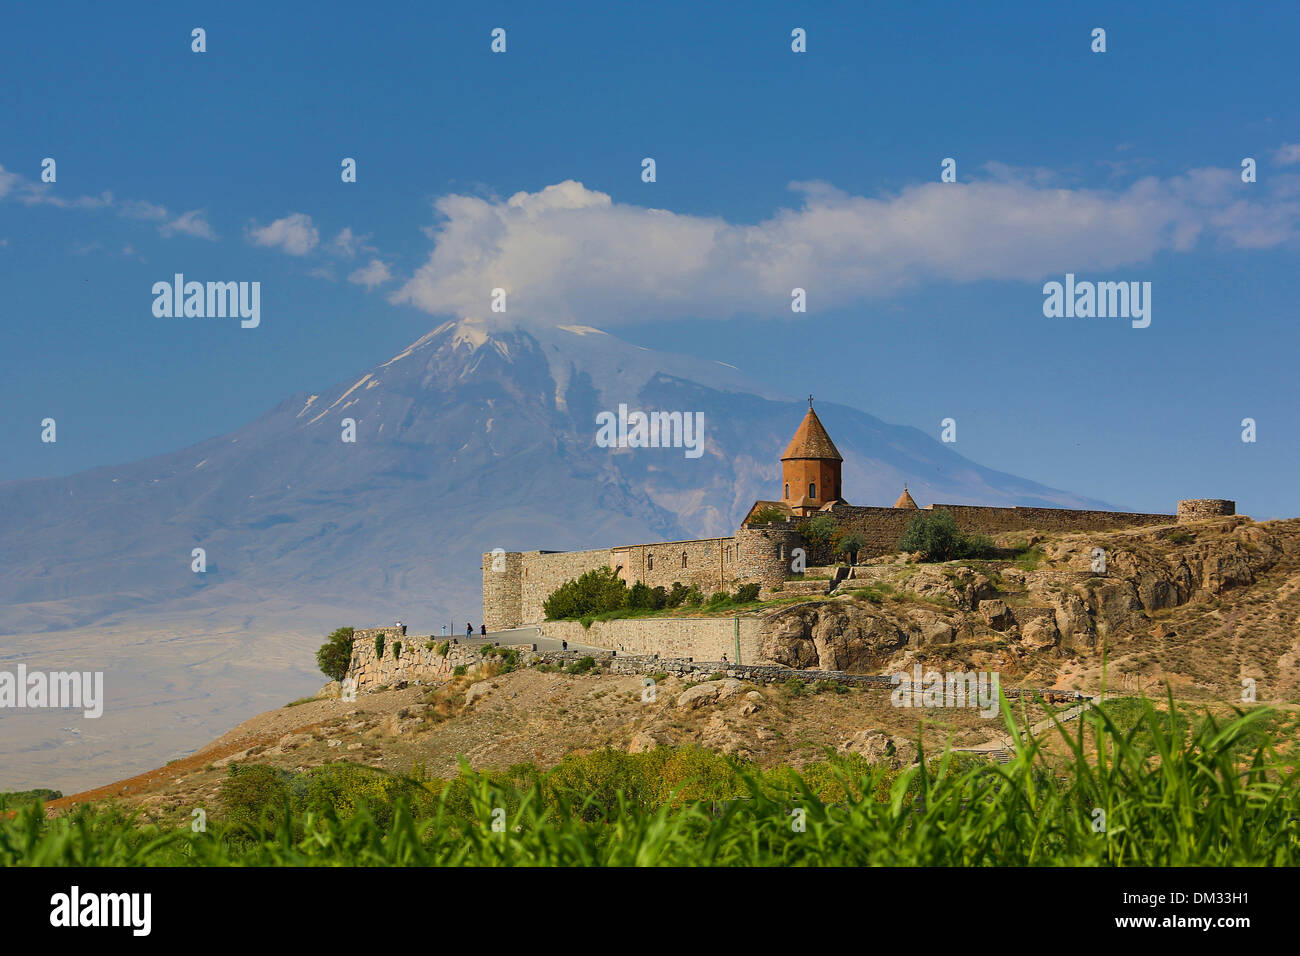 Caucase du Sud Caucase Arménie Eurasie Khor Virap Lusarat Ararat Noe architecture de montagne l'histoire de l'église image historique Banque D'Images